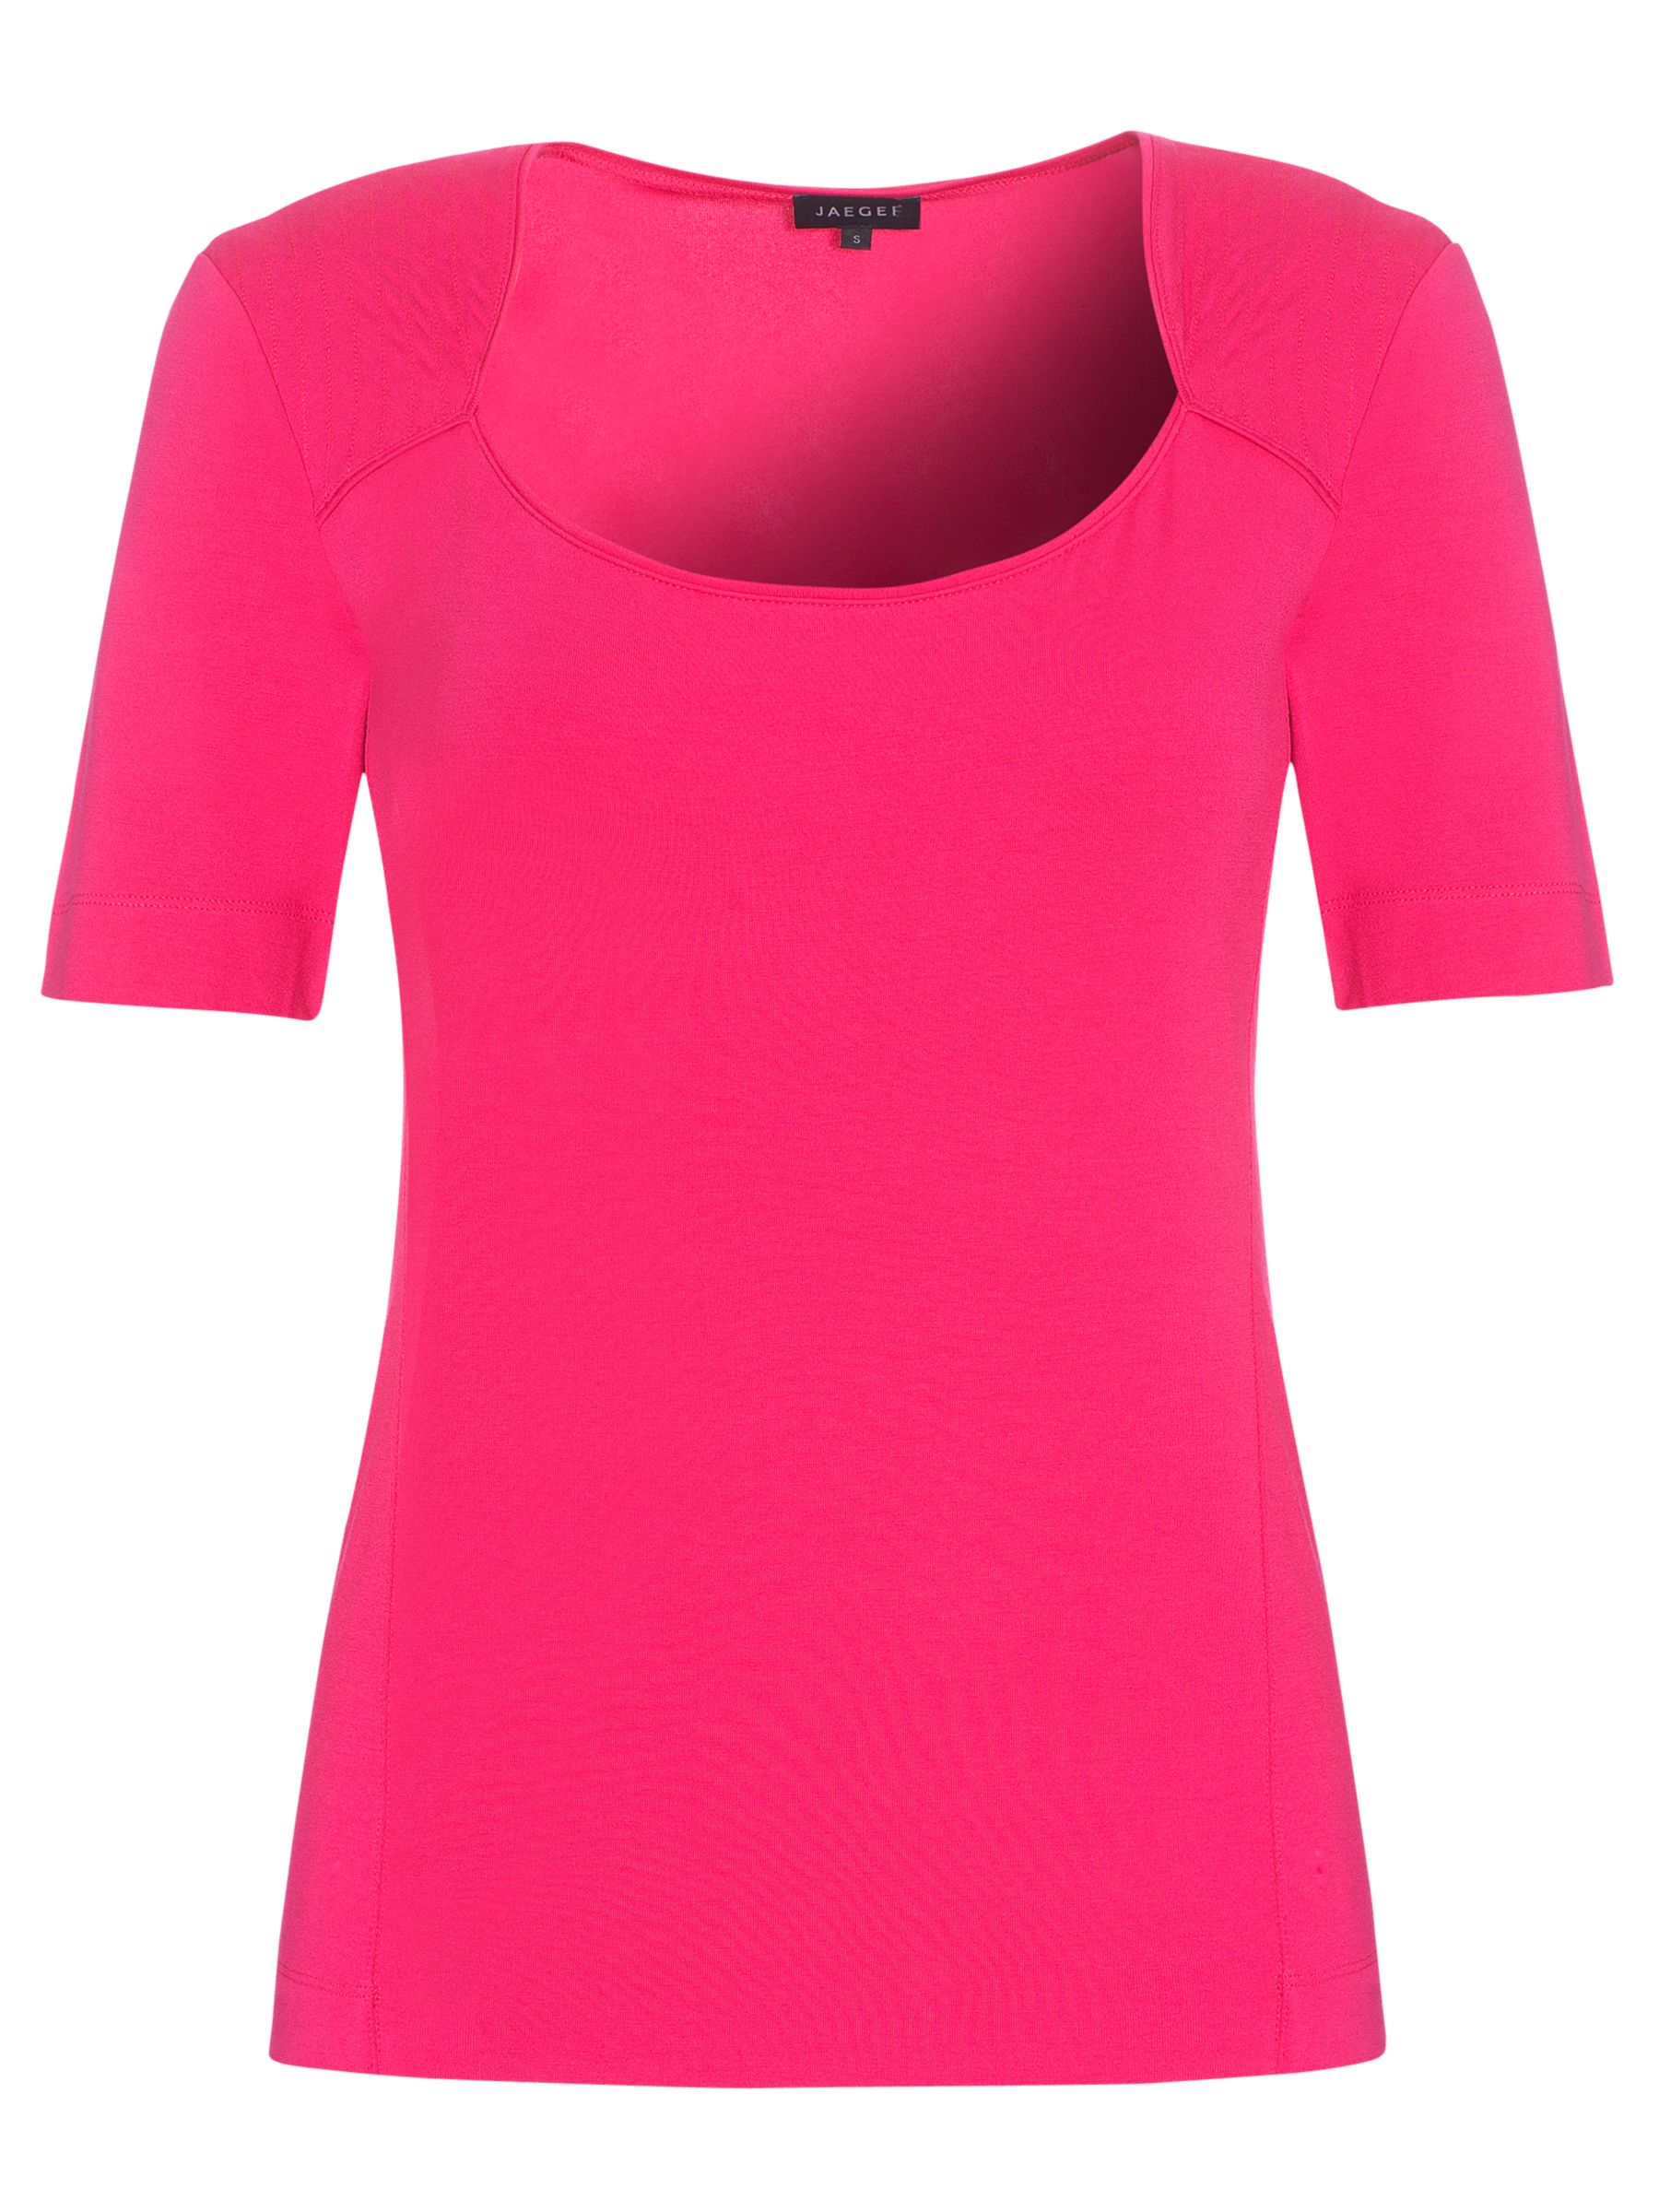 Essential Jersey T-Shirt, Hot pink